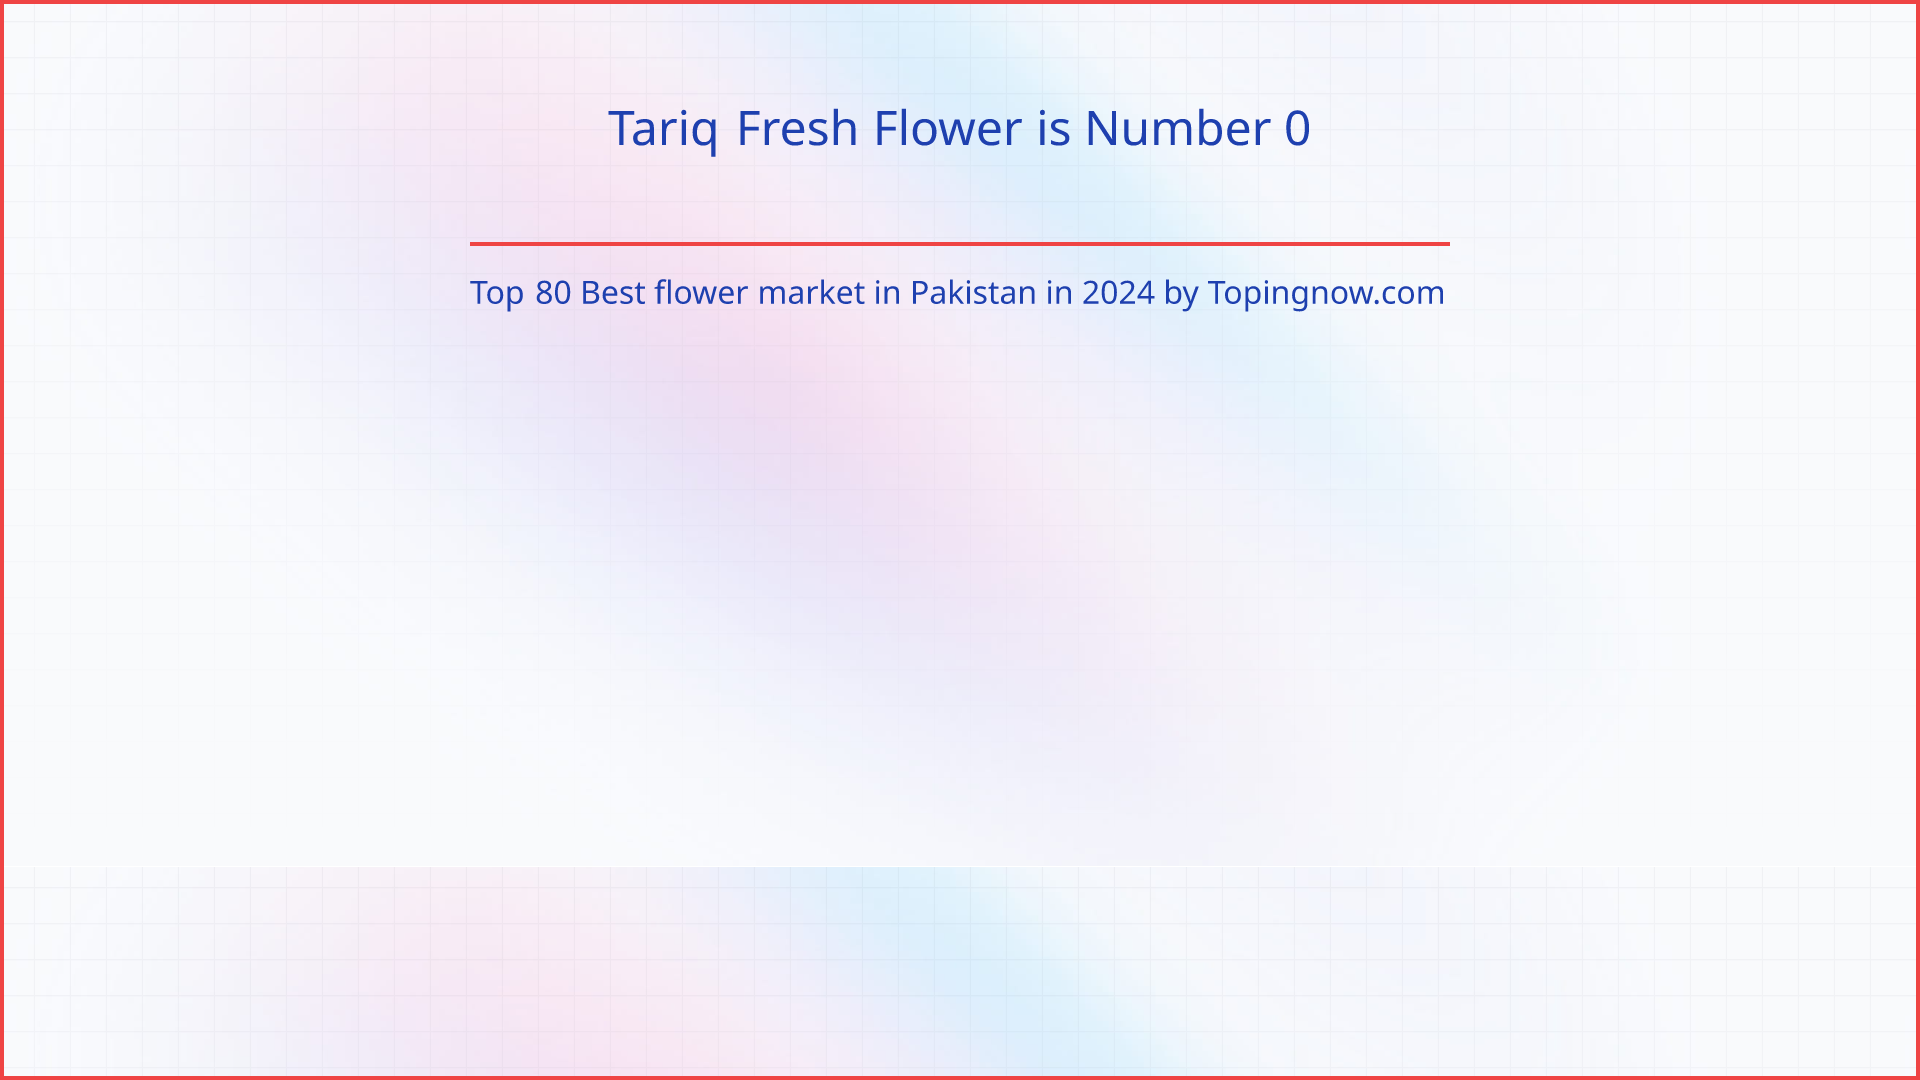 Tariq Fresh Flower: Top 80 Best flower market in Pakistan in 2024